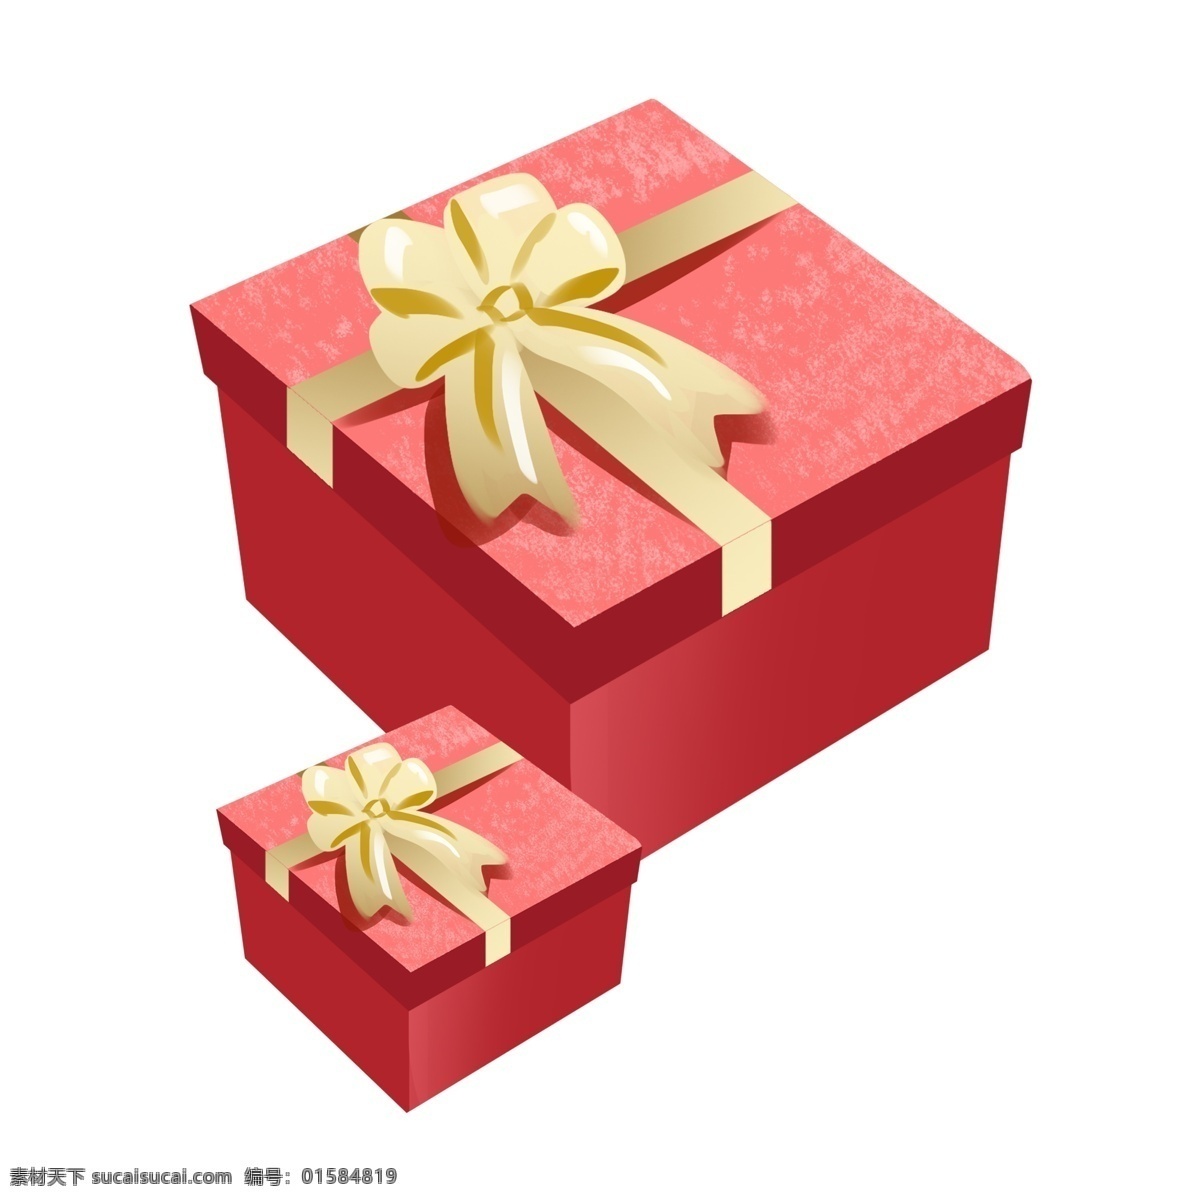 两个 红色 礼物 盒 插画 小礼物盒 大礼物盒 红色礼物盒 情人节礼物 节日送礼插画 黄色 蝴蝶结 装饰 两份礼物